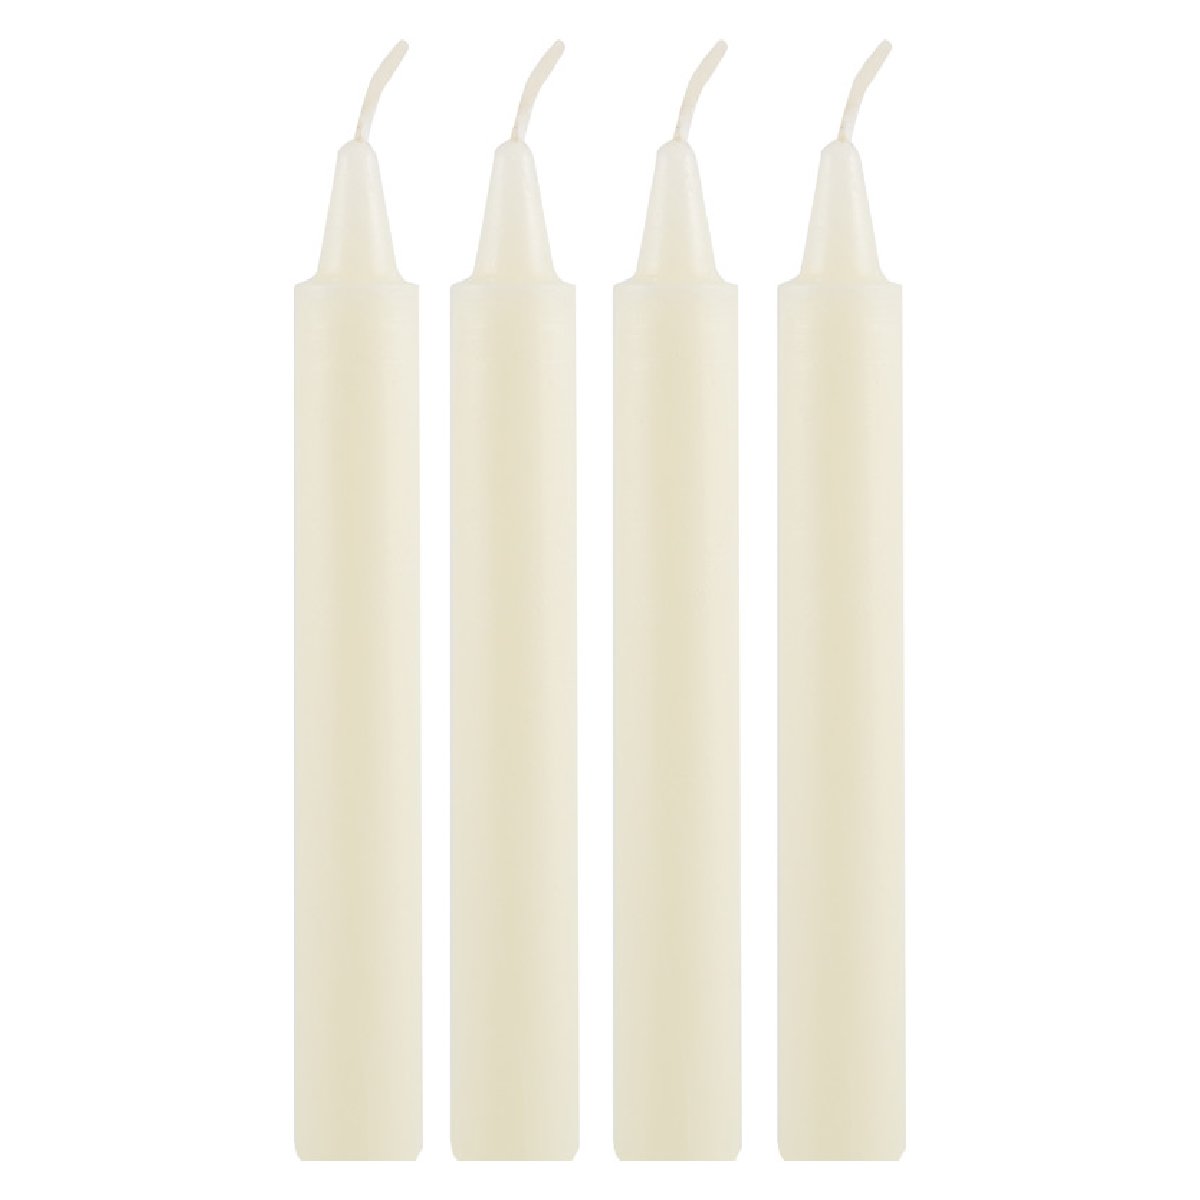 Свечи хозяйственные 40 гр., высота 15 см., в упаковке 4 шт. (005534)Купить